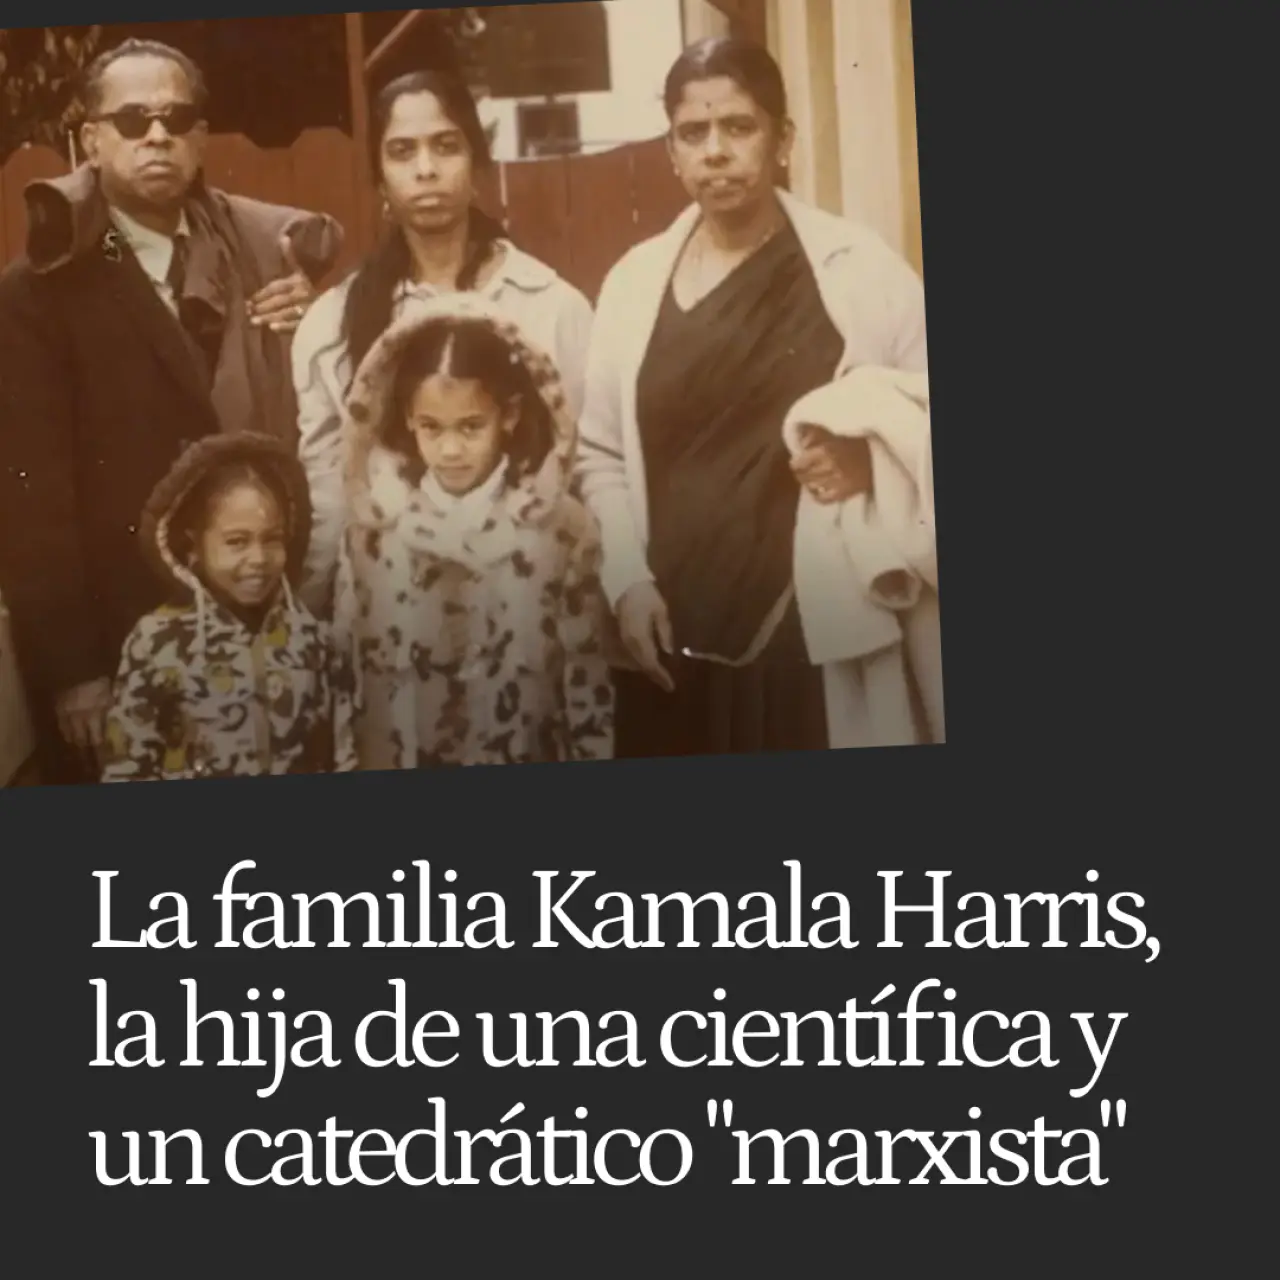 Las tres caras de Kamala Harris, la hija de una científica india que flirteó con los Panteras Negras y un catedrático jamaicano "marxista"